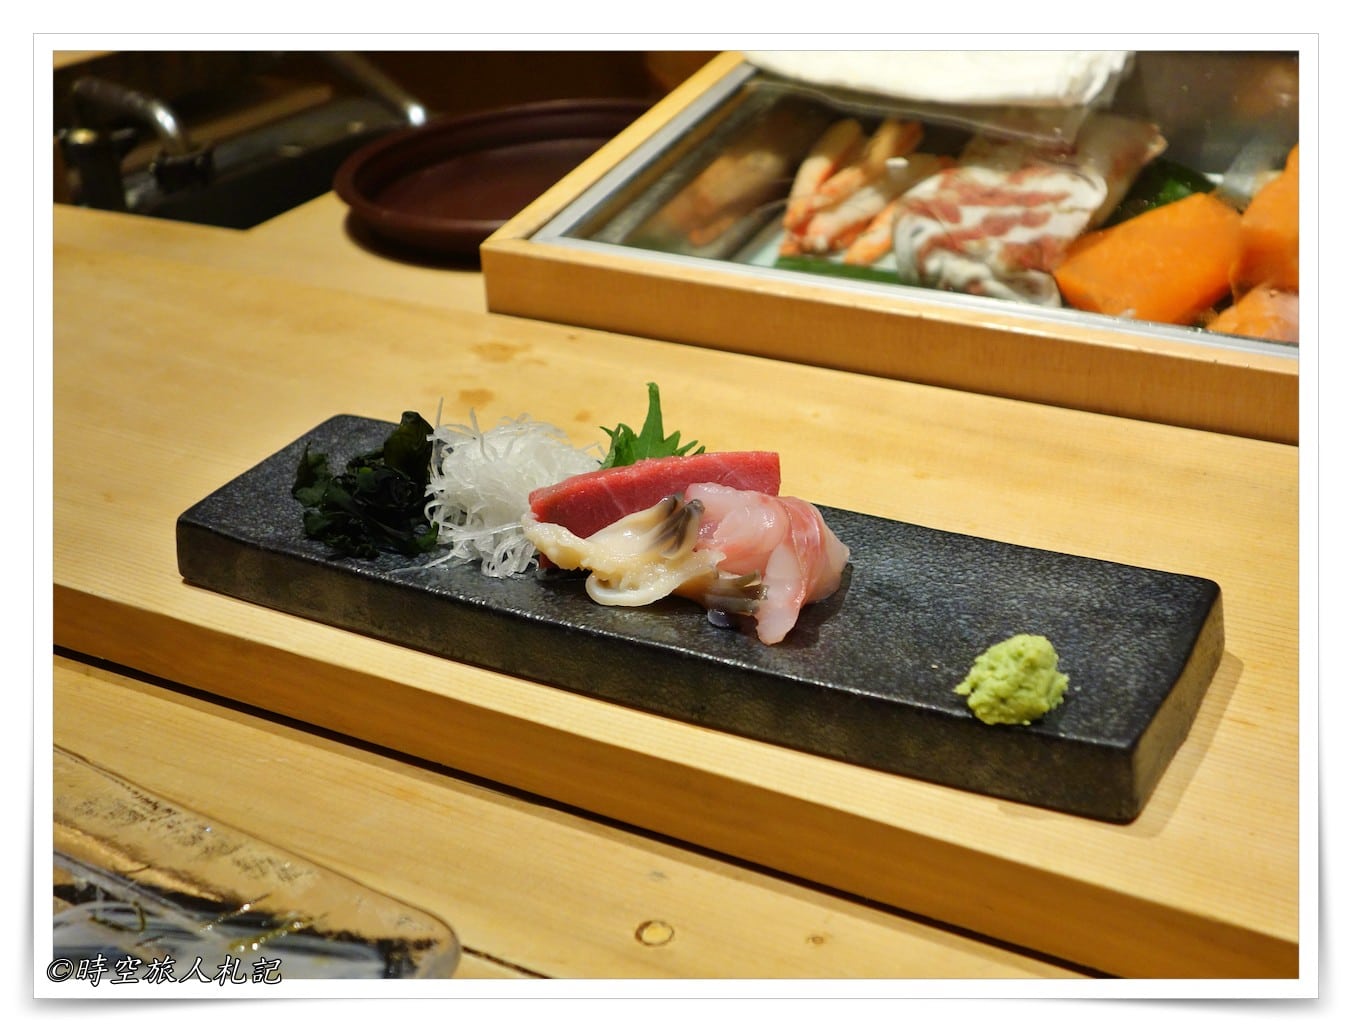 Otaru Gourmet: Masu Sushi